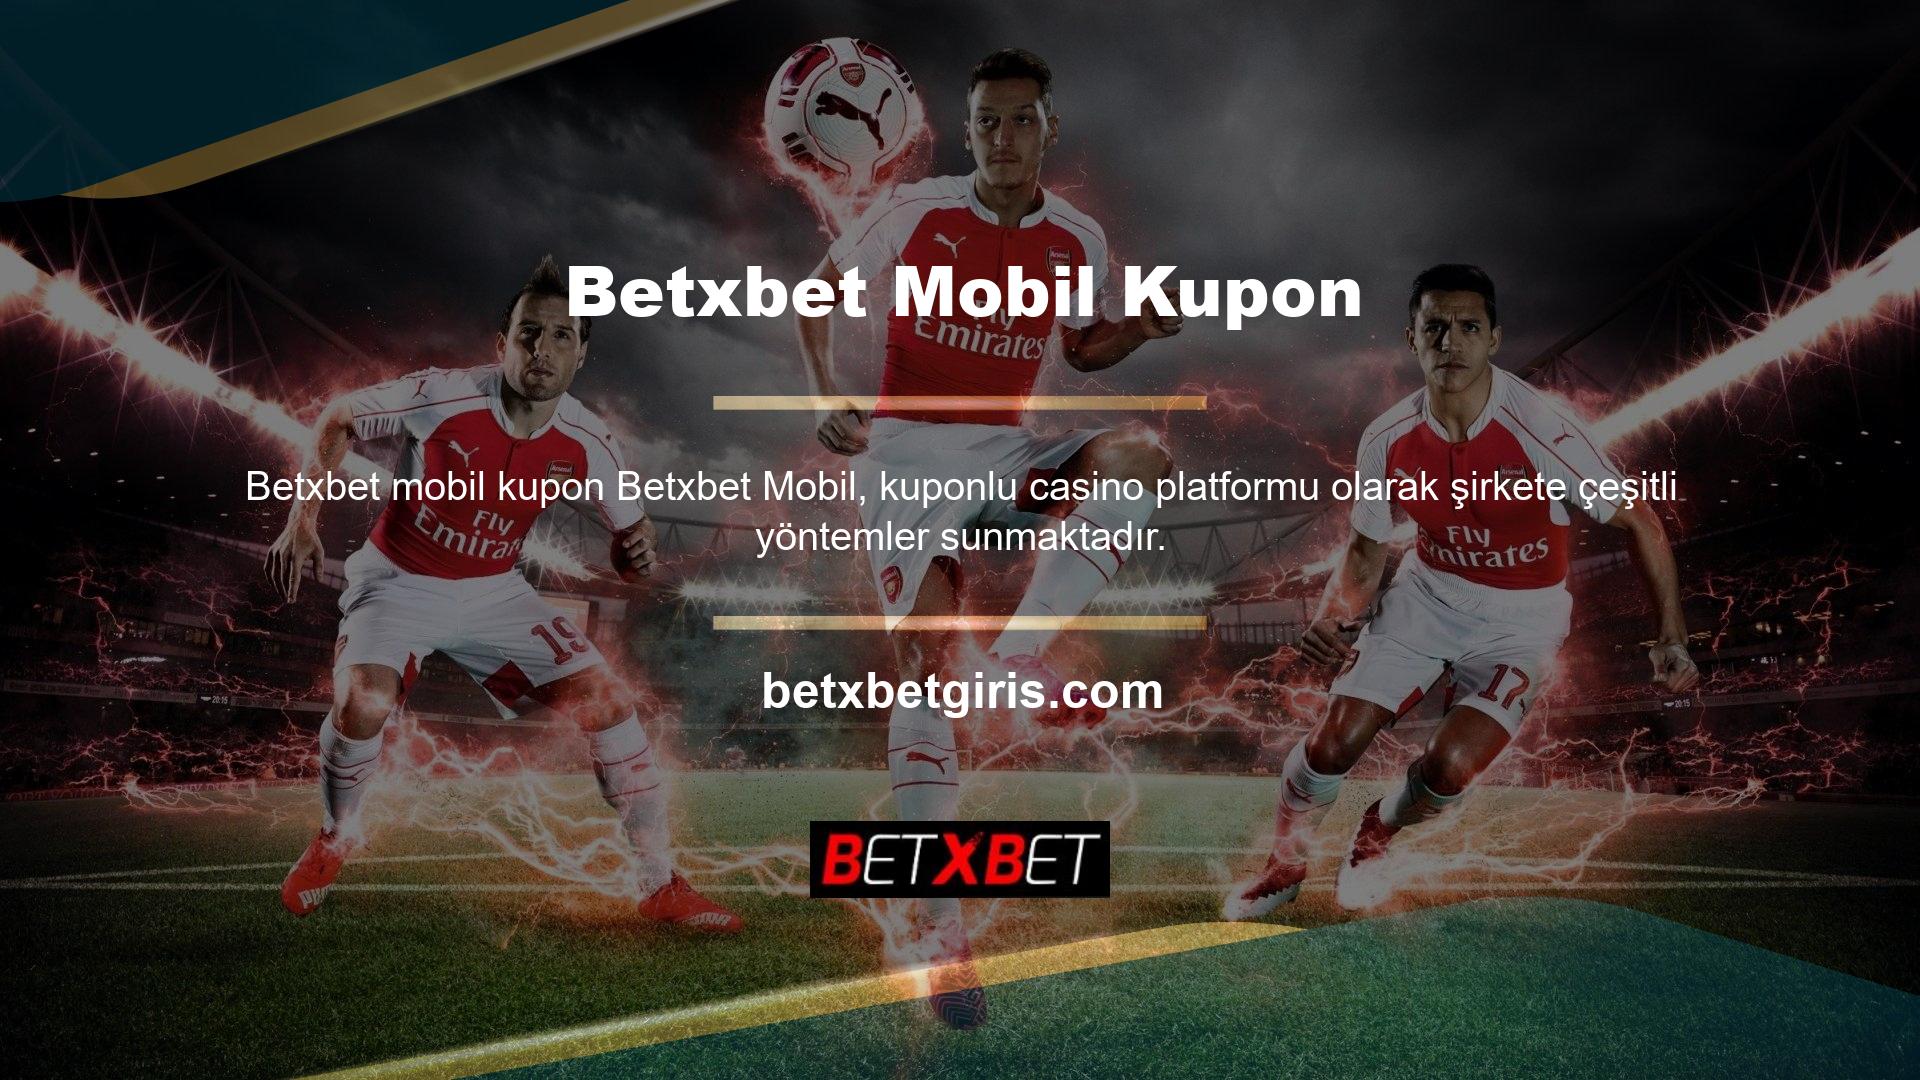 Betxbet mobil kupon seçimleri en popüler ve yer imlerine eklenmiş web sitelerinden biridir